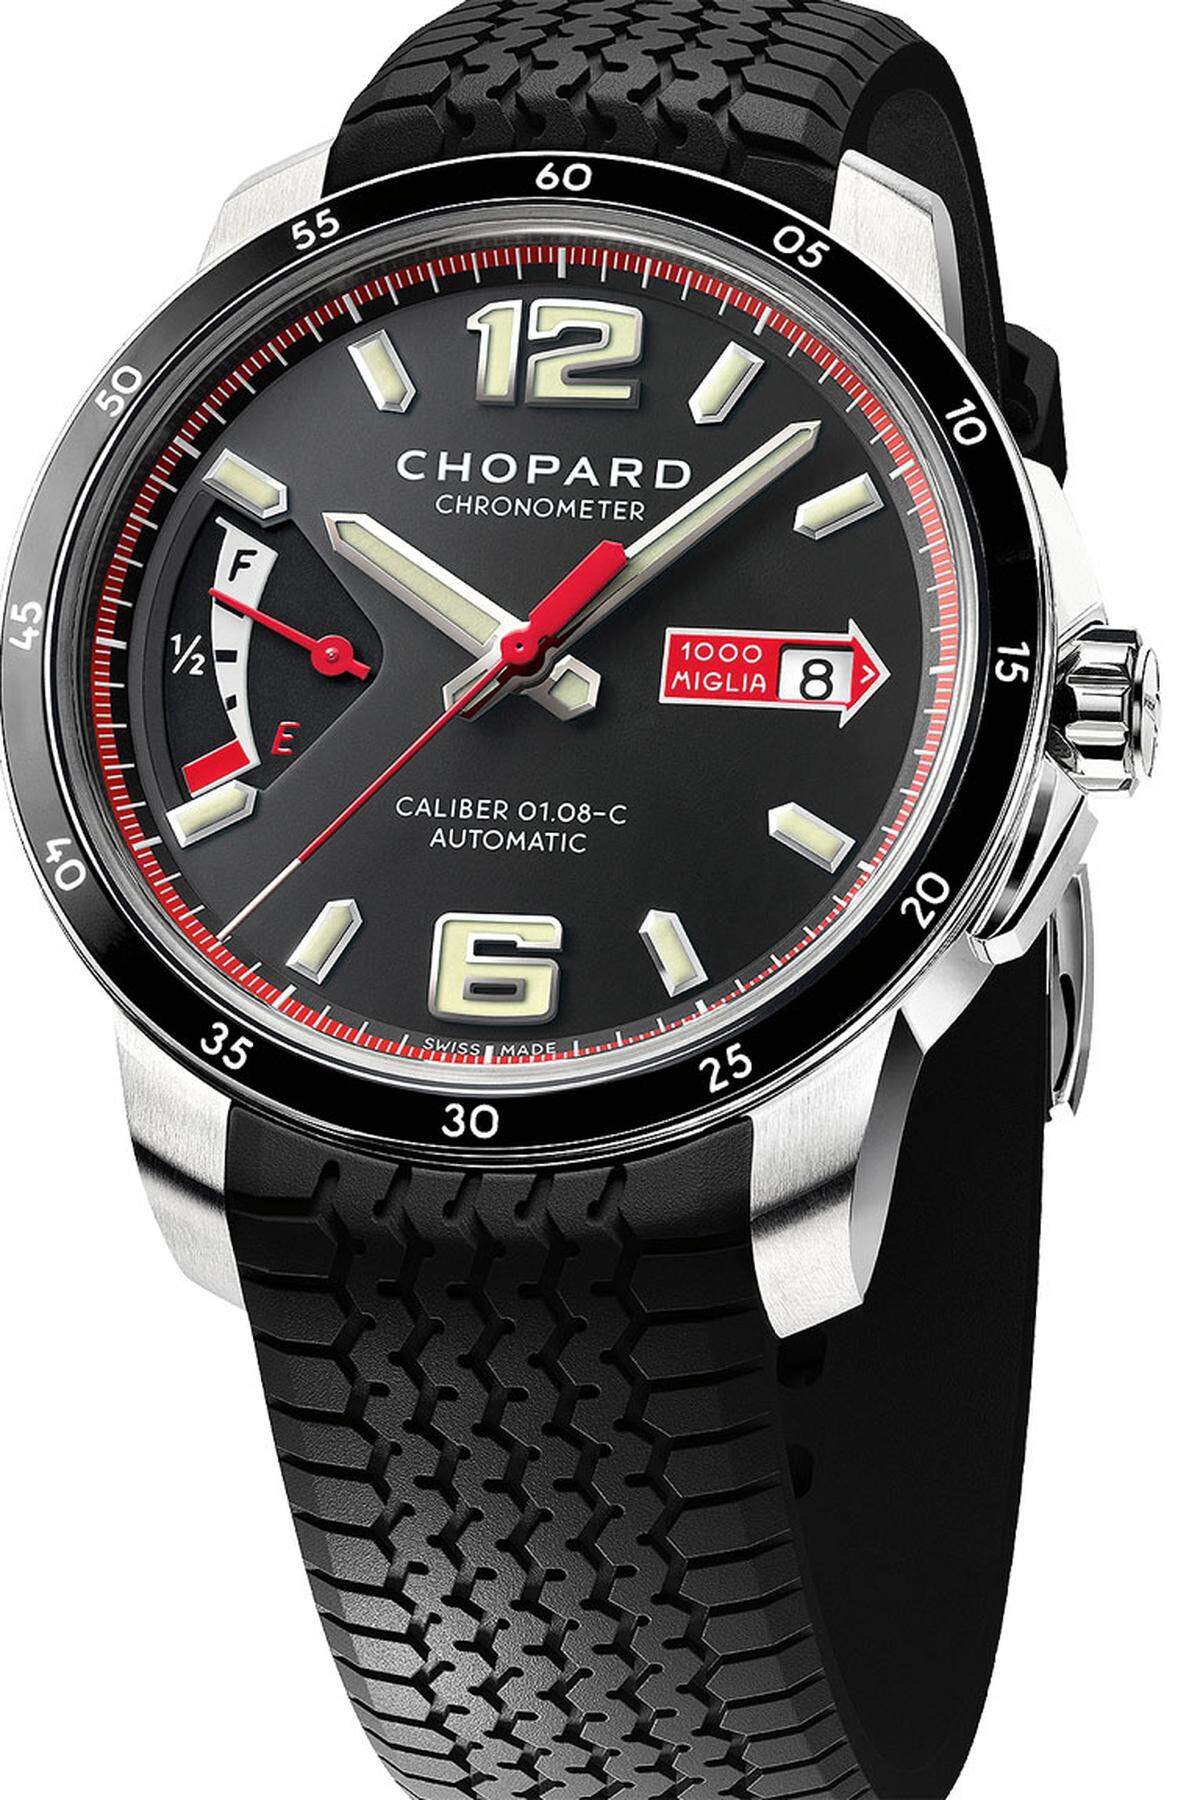 Auch die Mille-Miglia-Kollektion wird nun mit Chopard-eigenen Uhrwerken aufgewertet. Neben diesem Dreizeigerkaliber kommt auch ein Chronografenkaliber zum Einsatz.